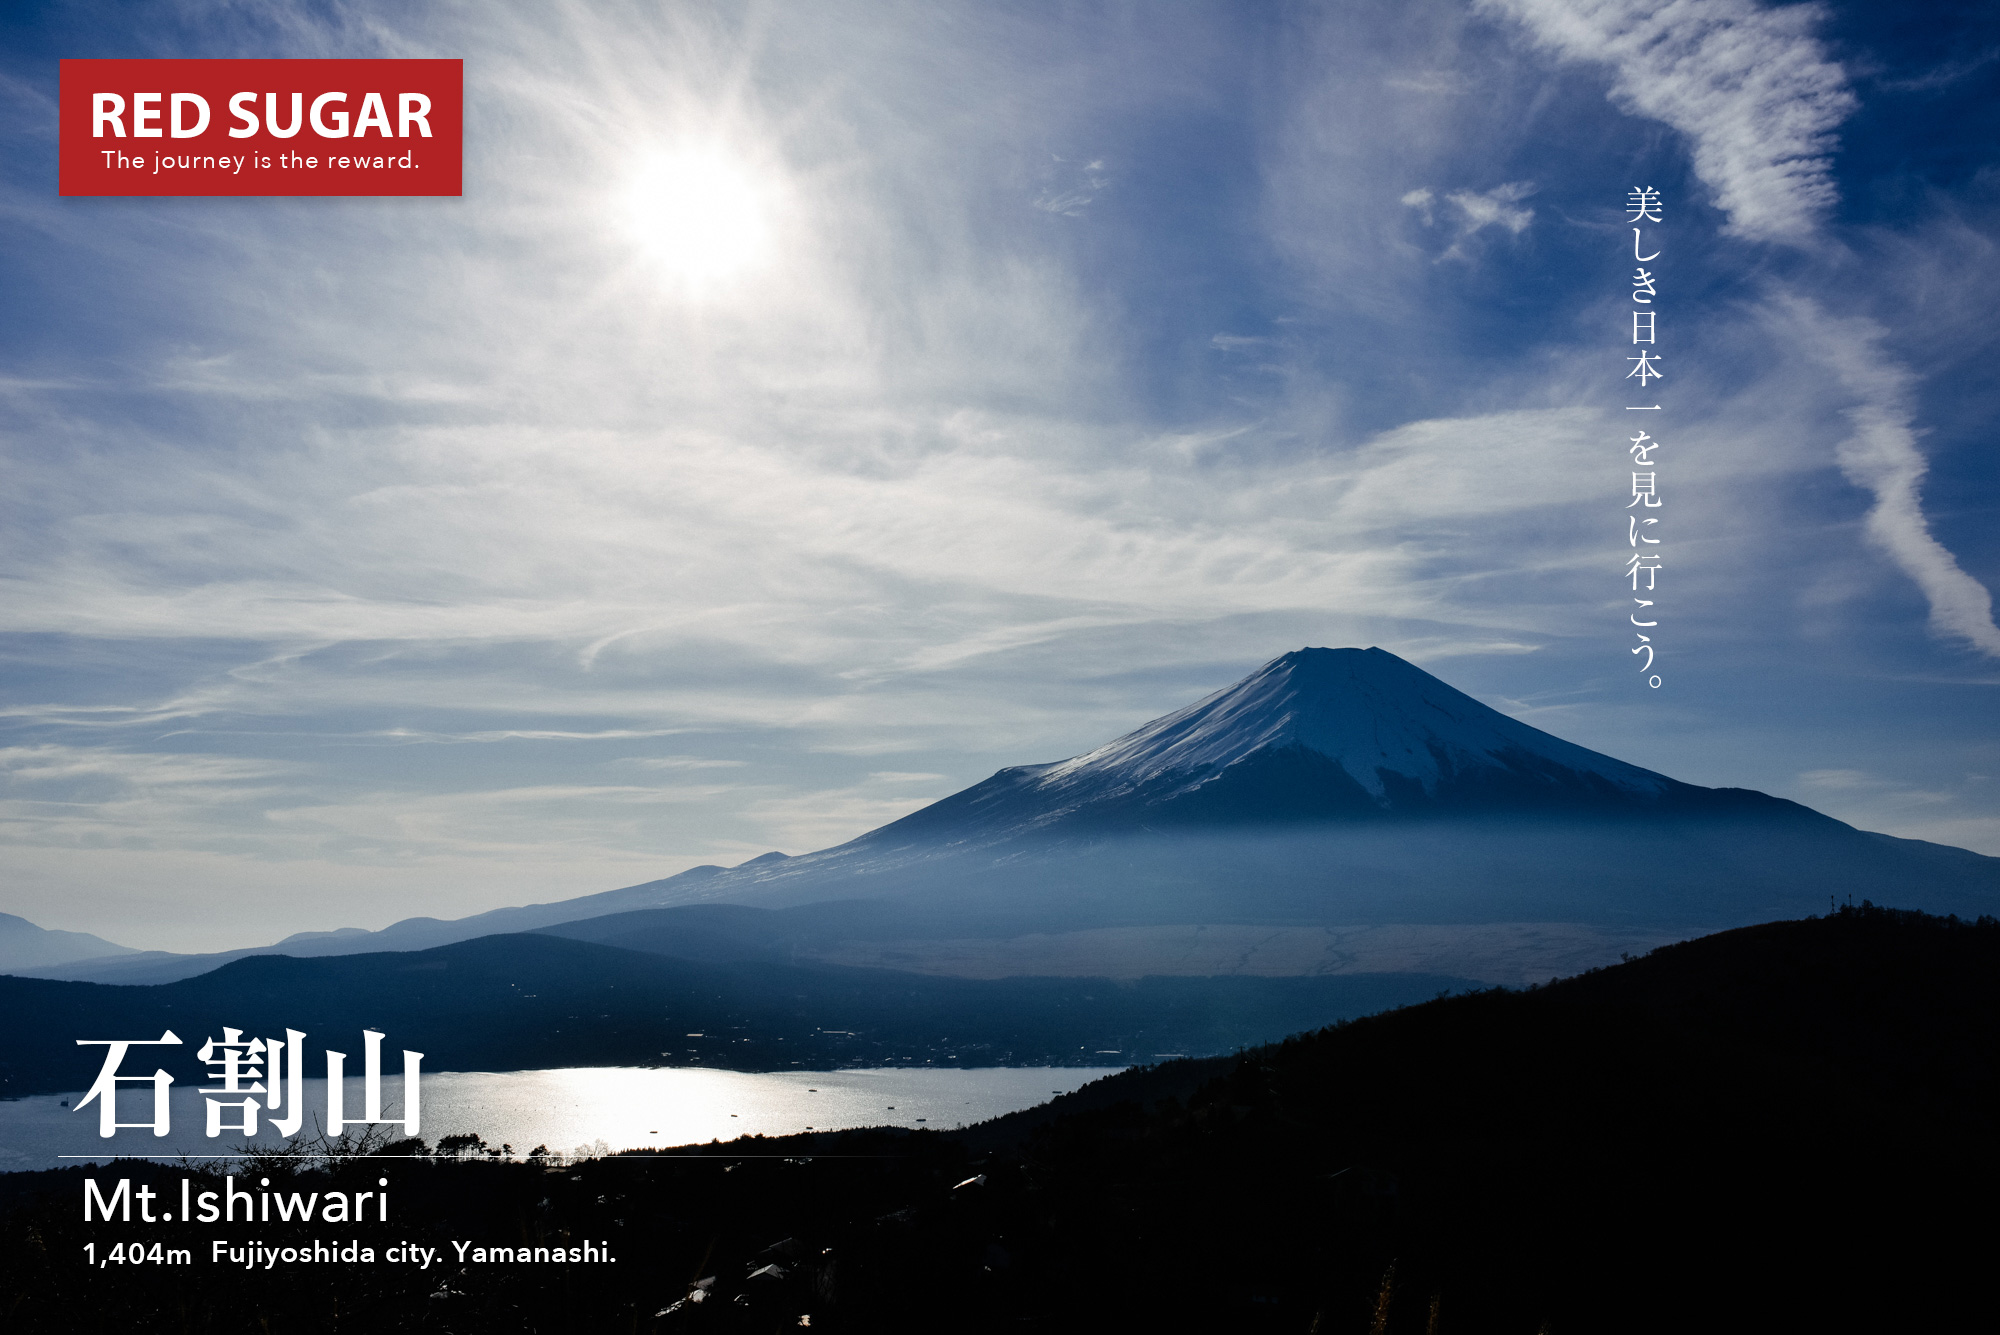 富士 石割山 青空広がる冬の富士 関東登山者にオススメする冬の富士見登山スポット Red Sugar